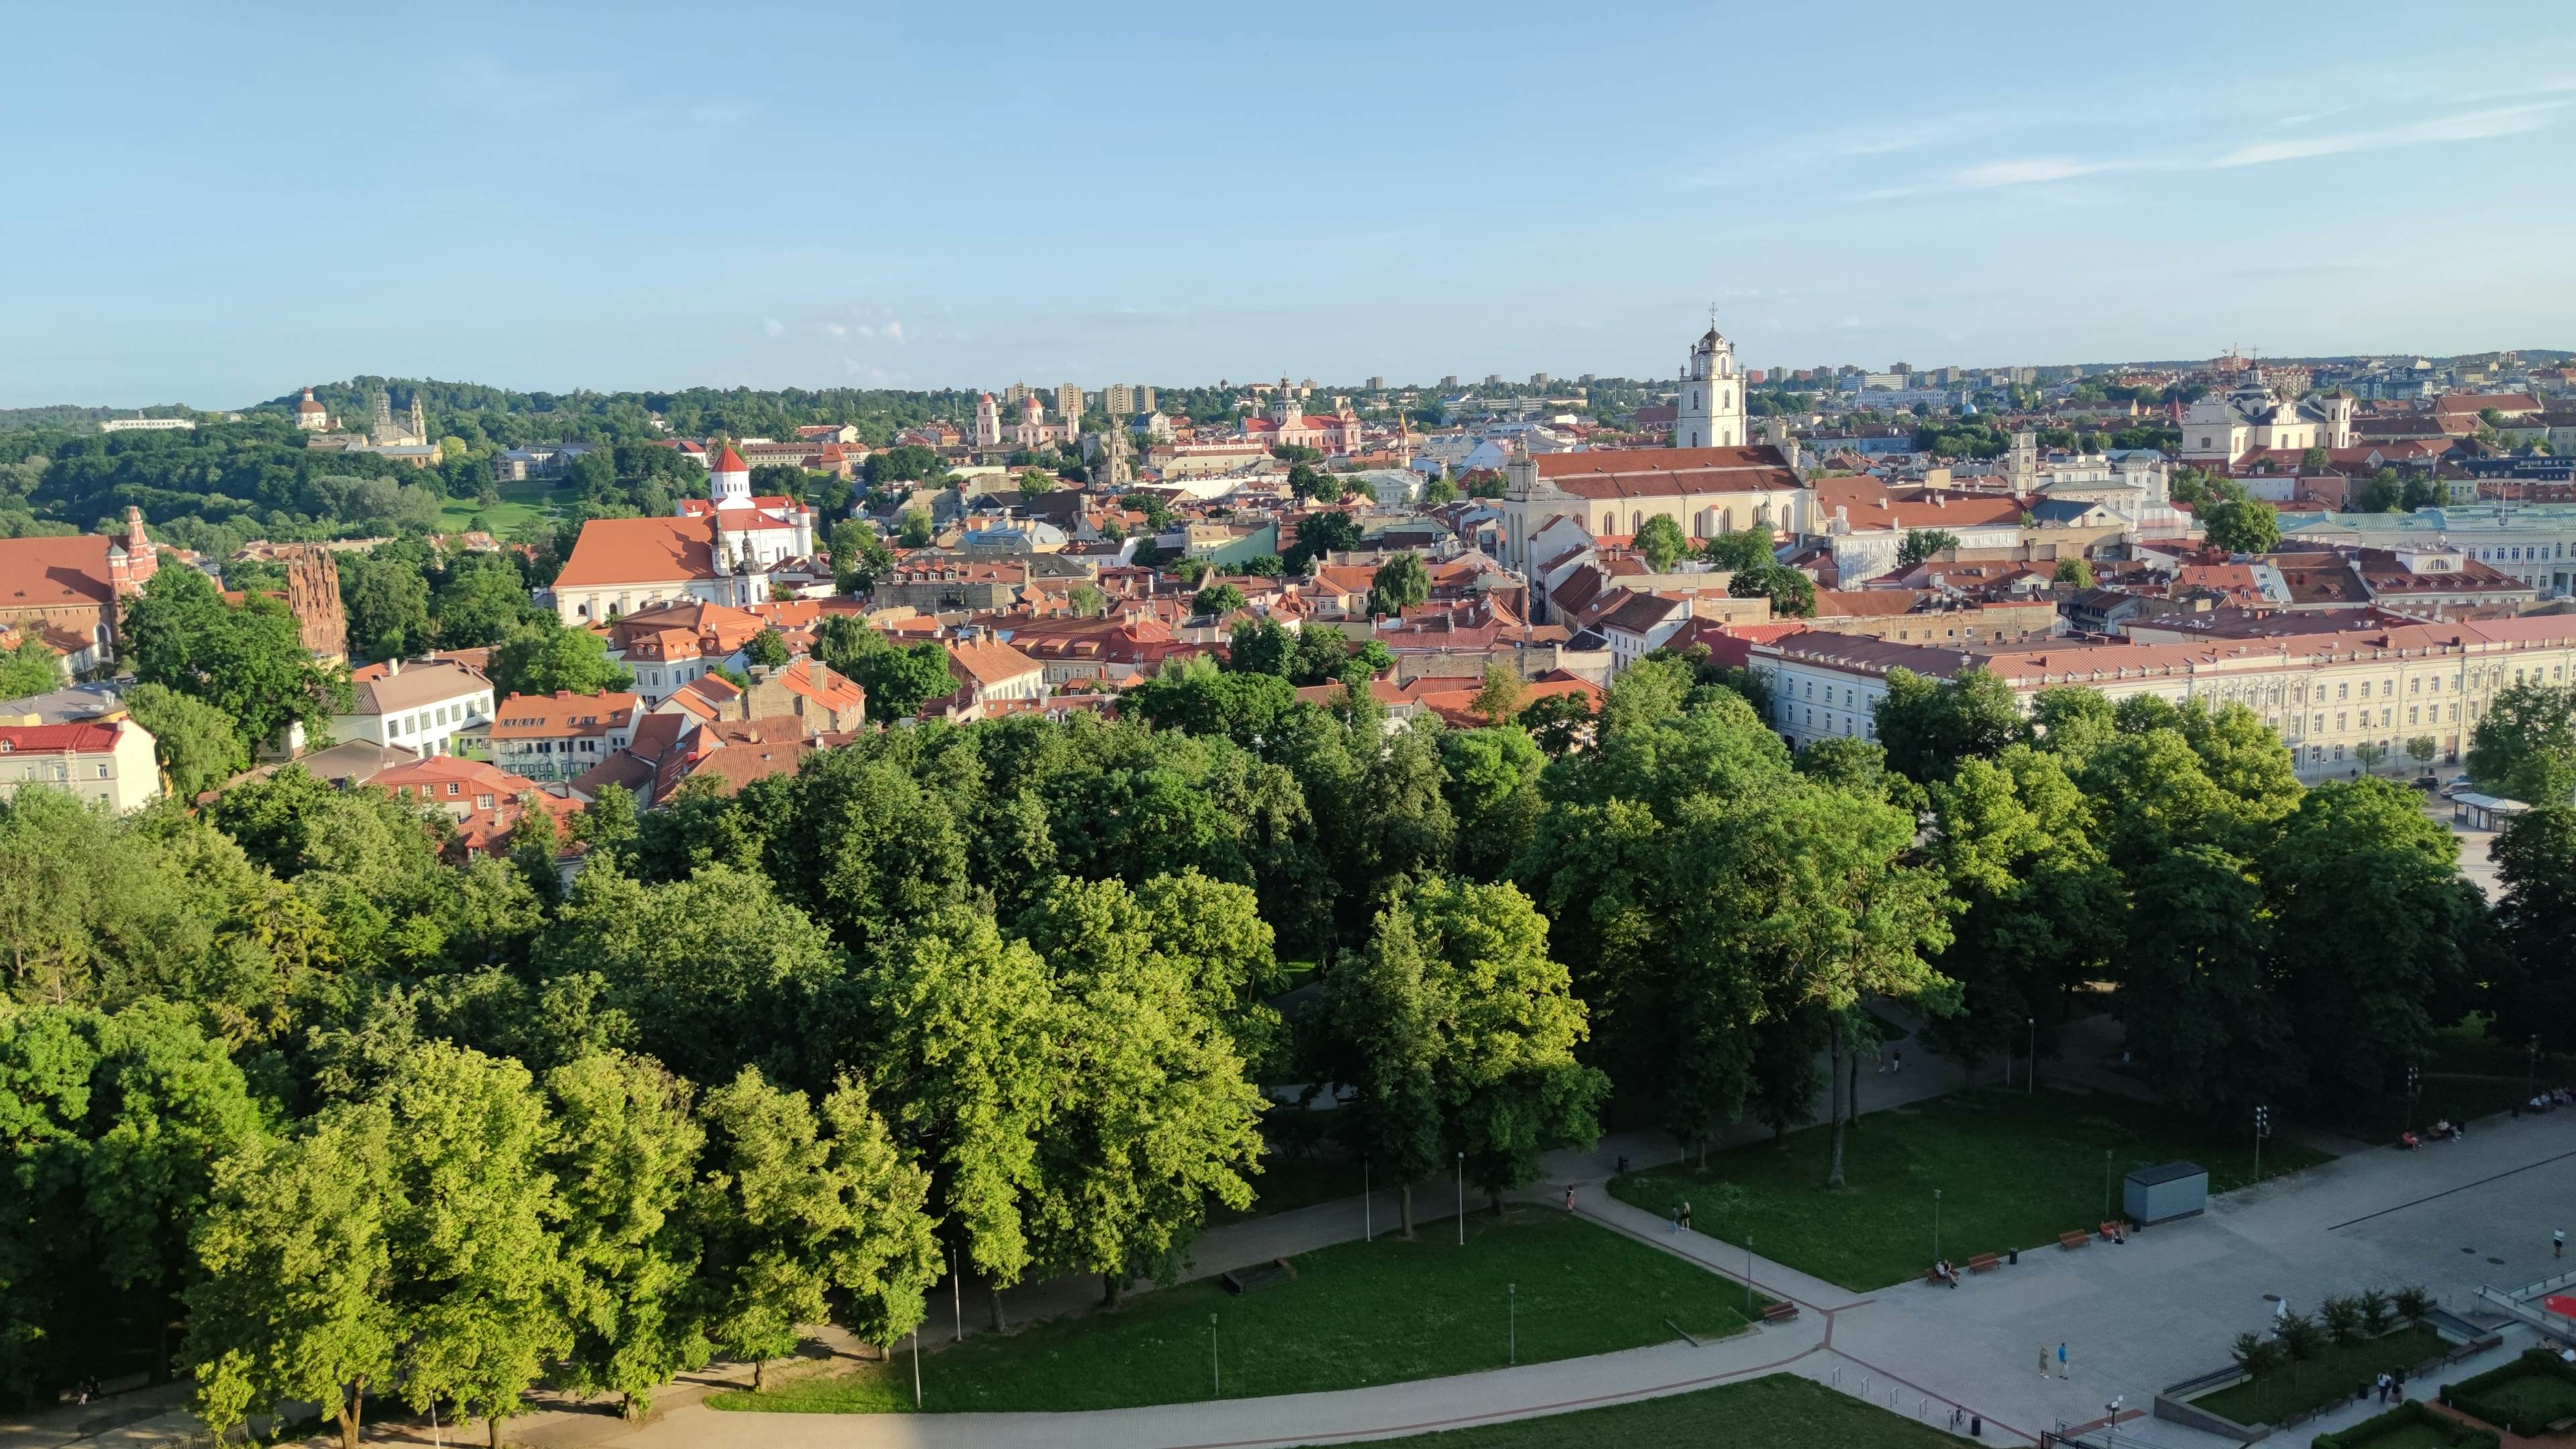 Vilnius image